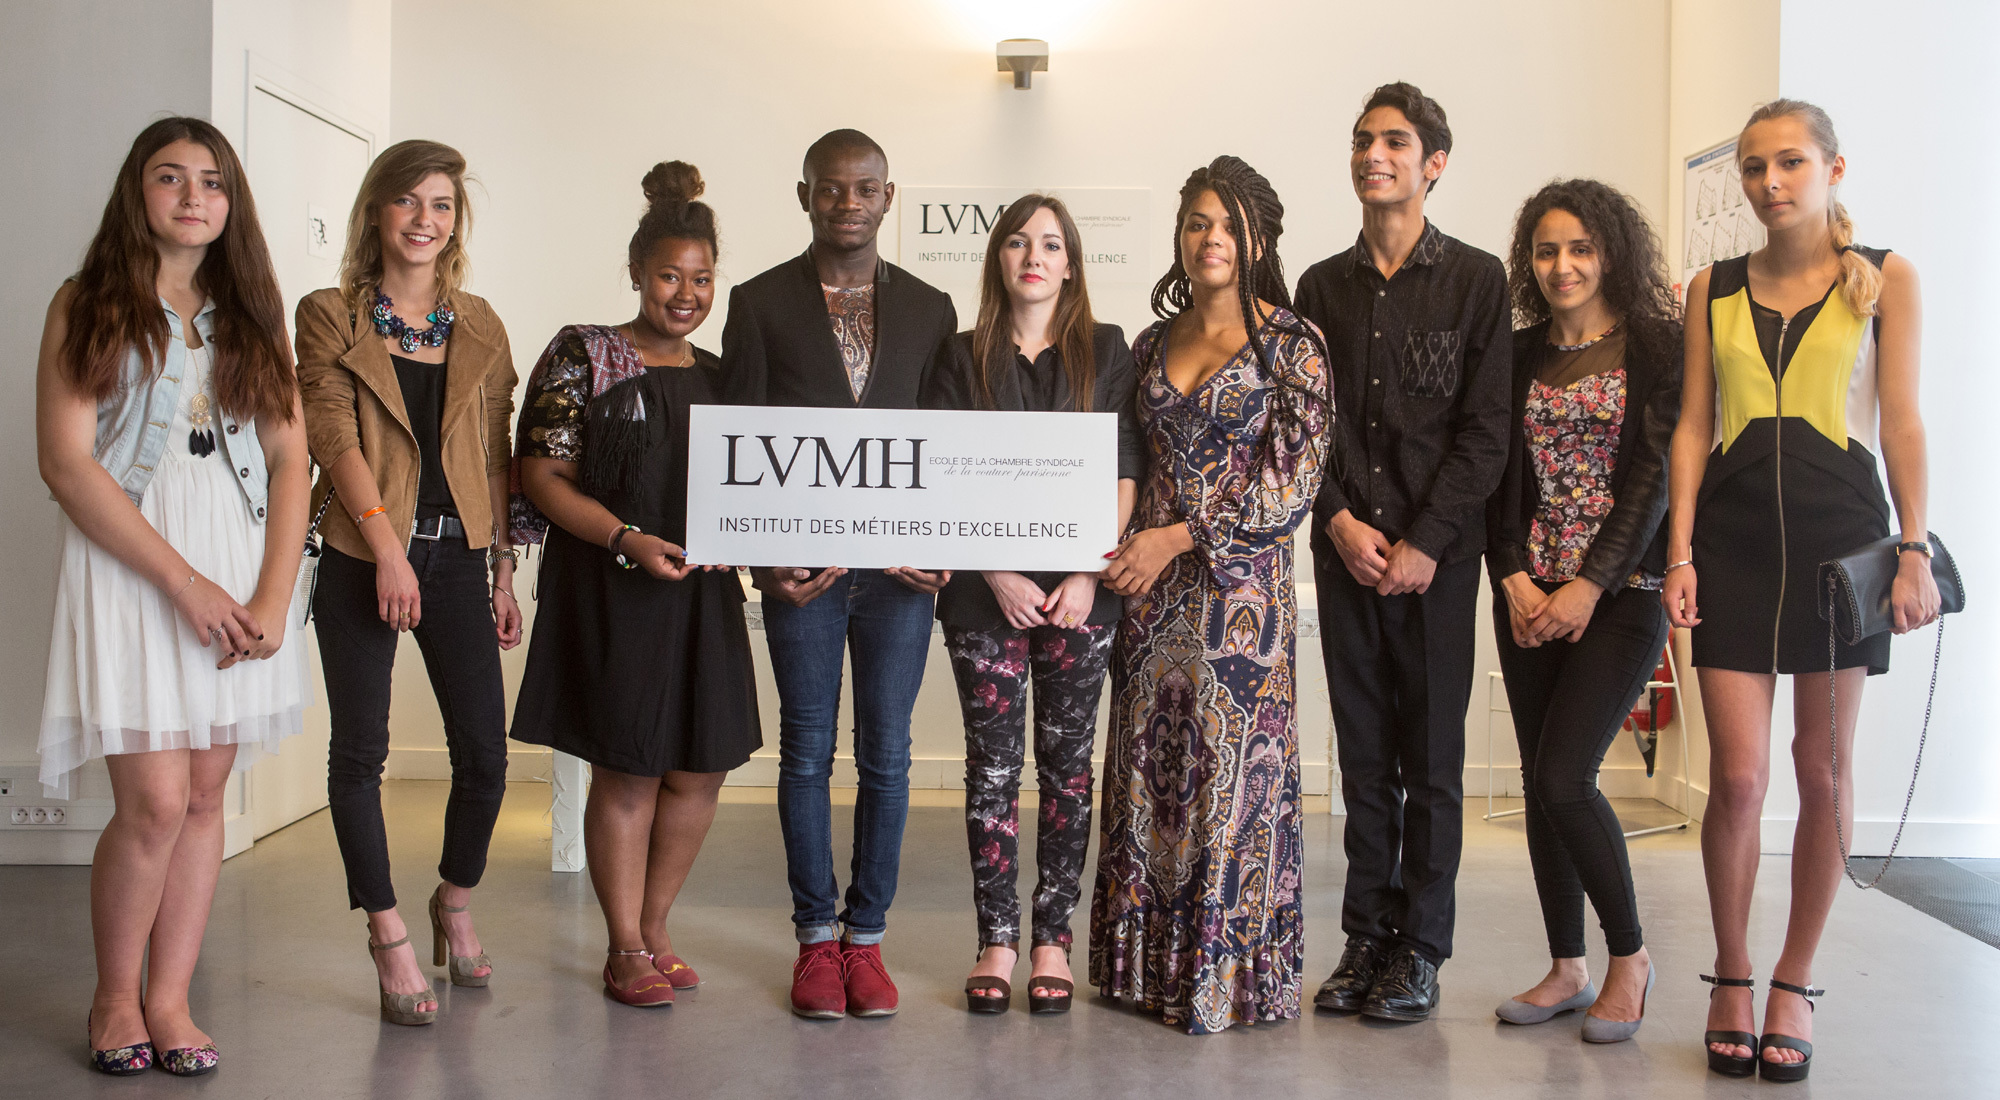 LVMH creates “L'Institut des Métiers d'excellence” - LVMH